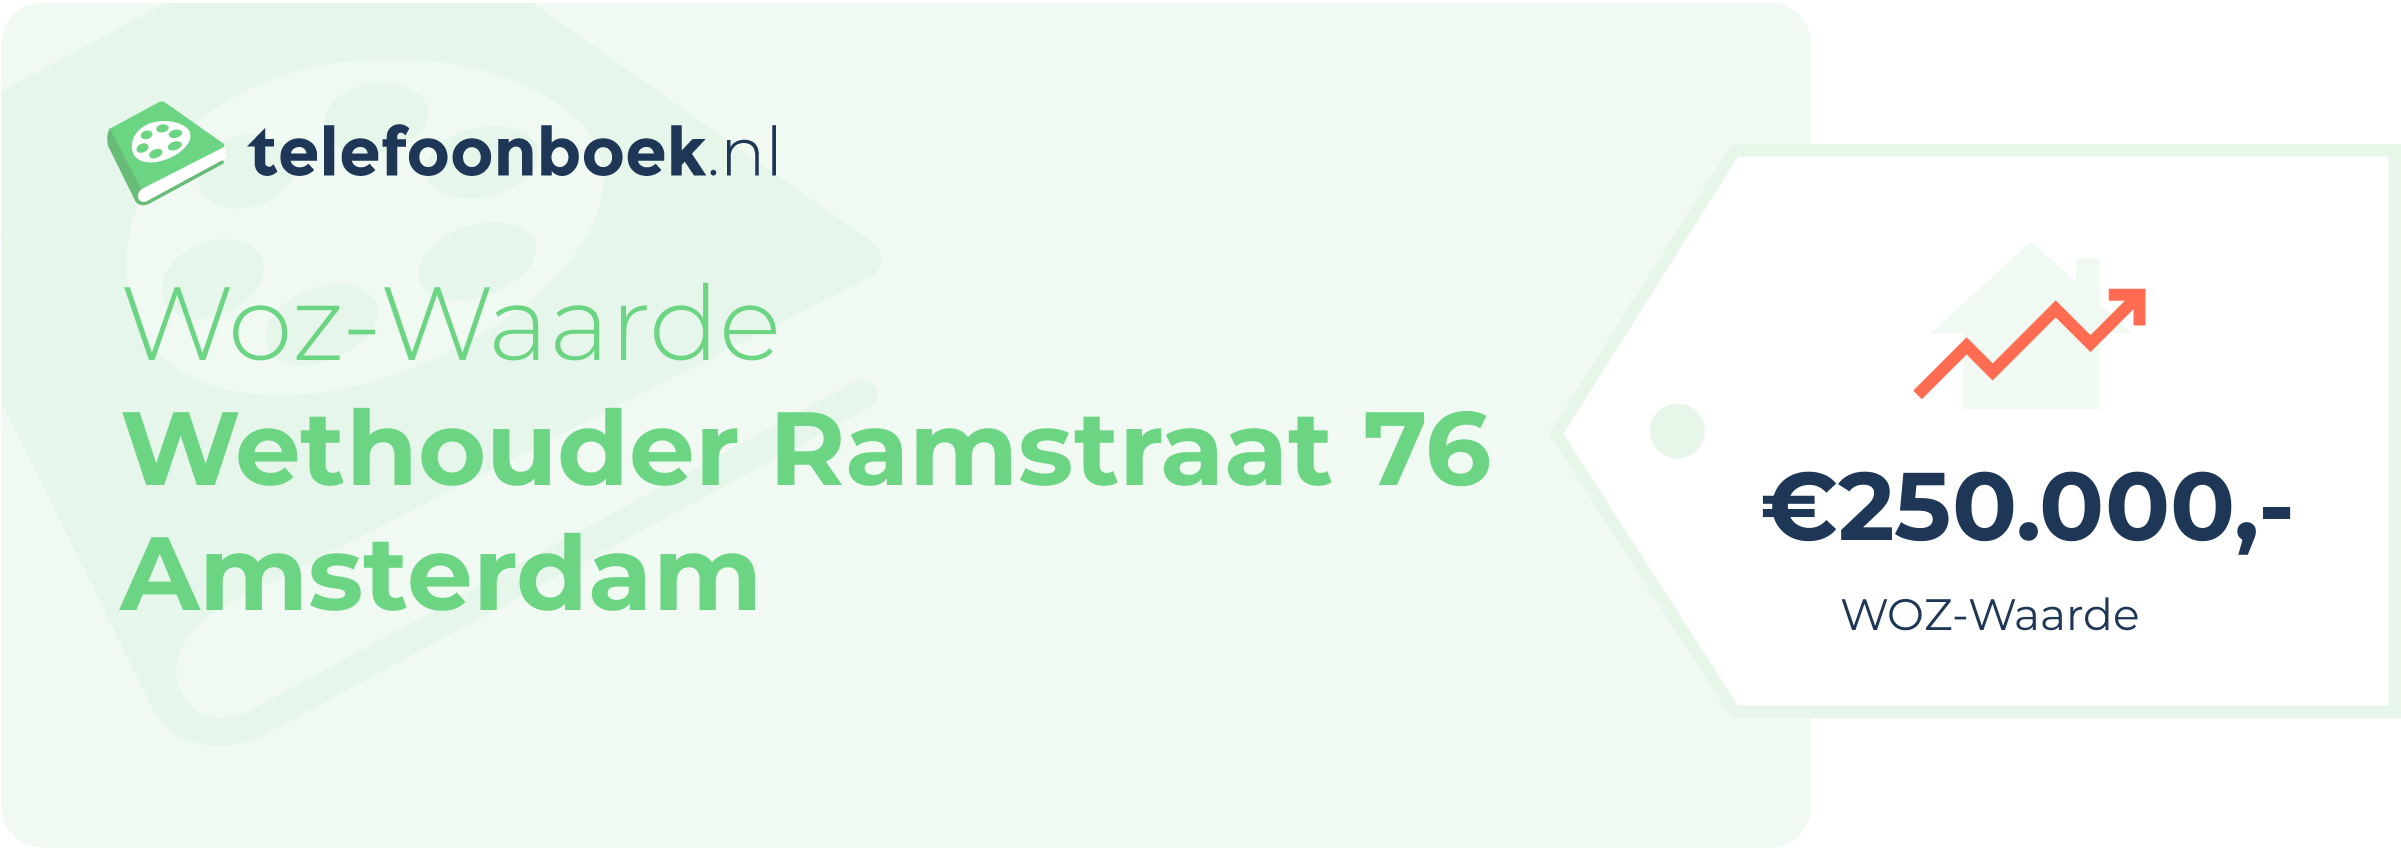 WOZ-waarde Wethouder Ramstraat 76 Amsterdam